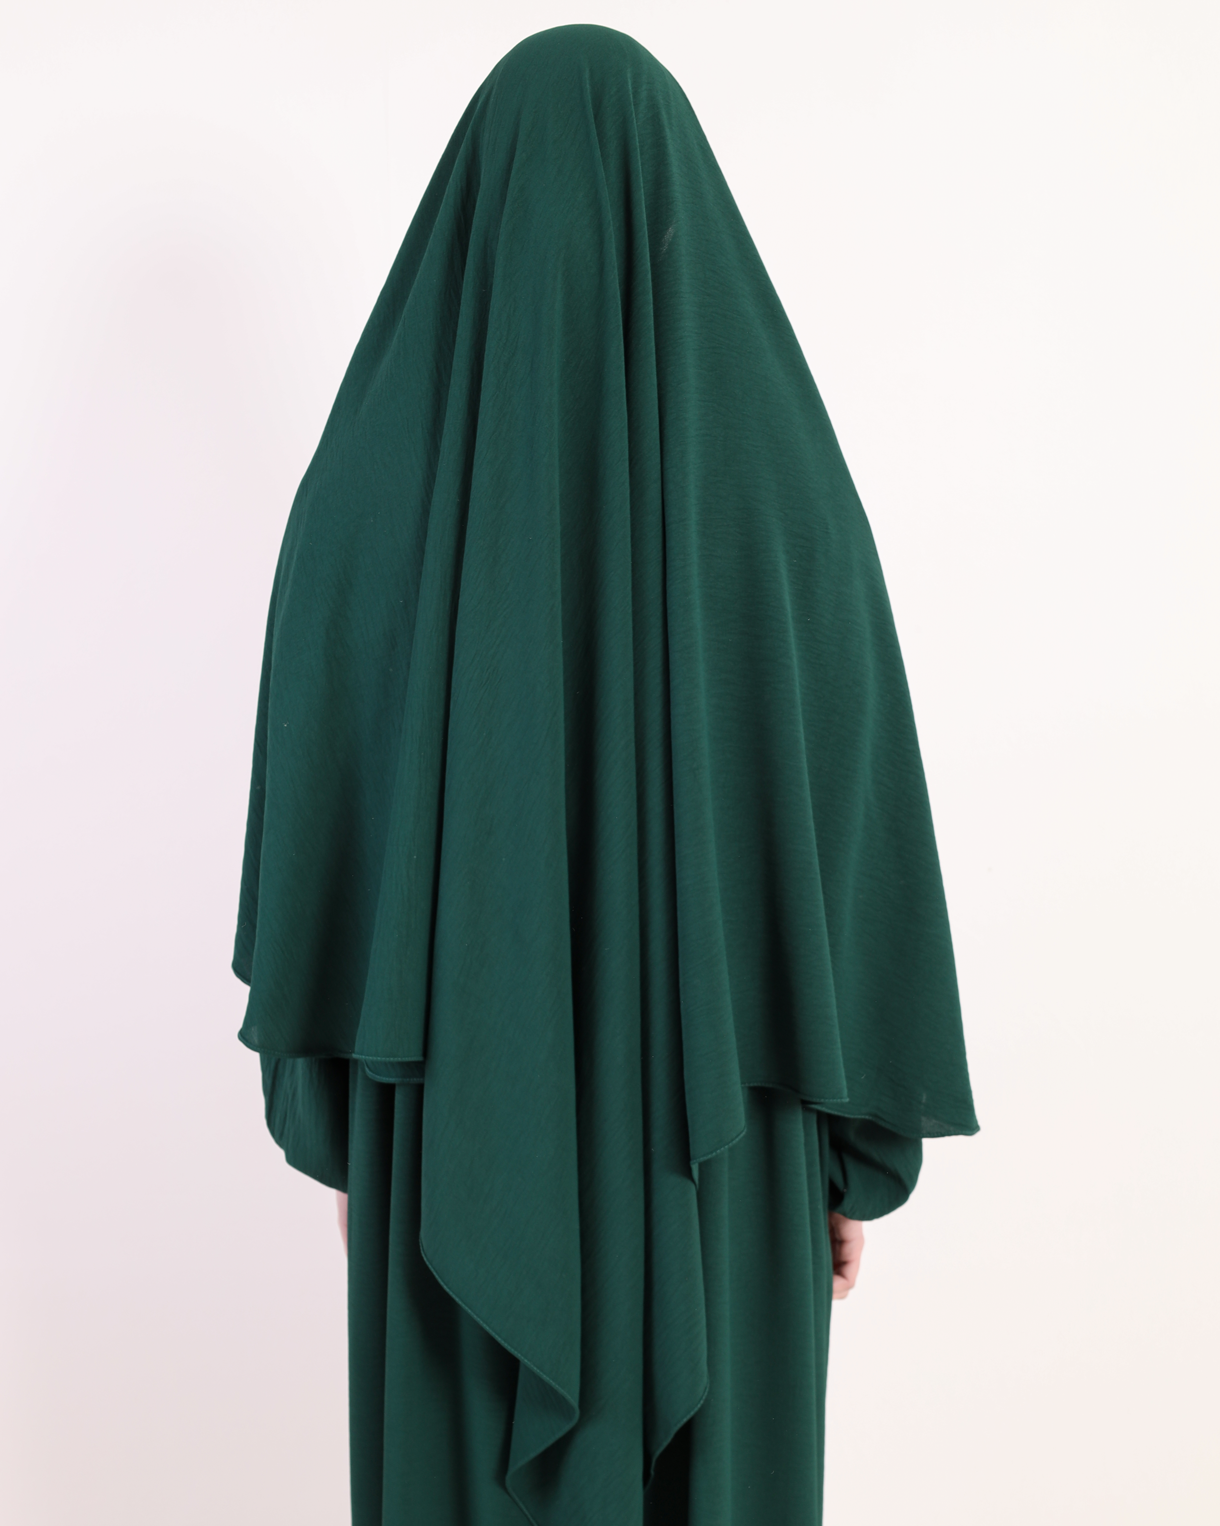 Royal Green French Hijab